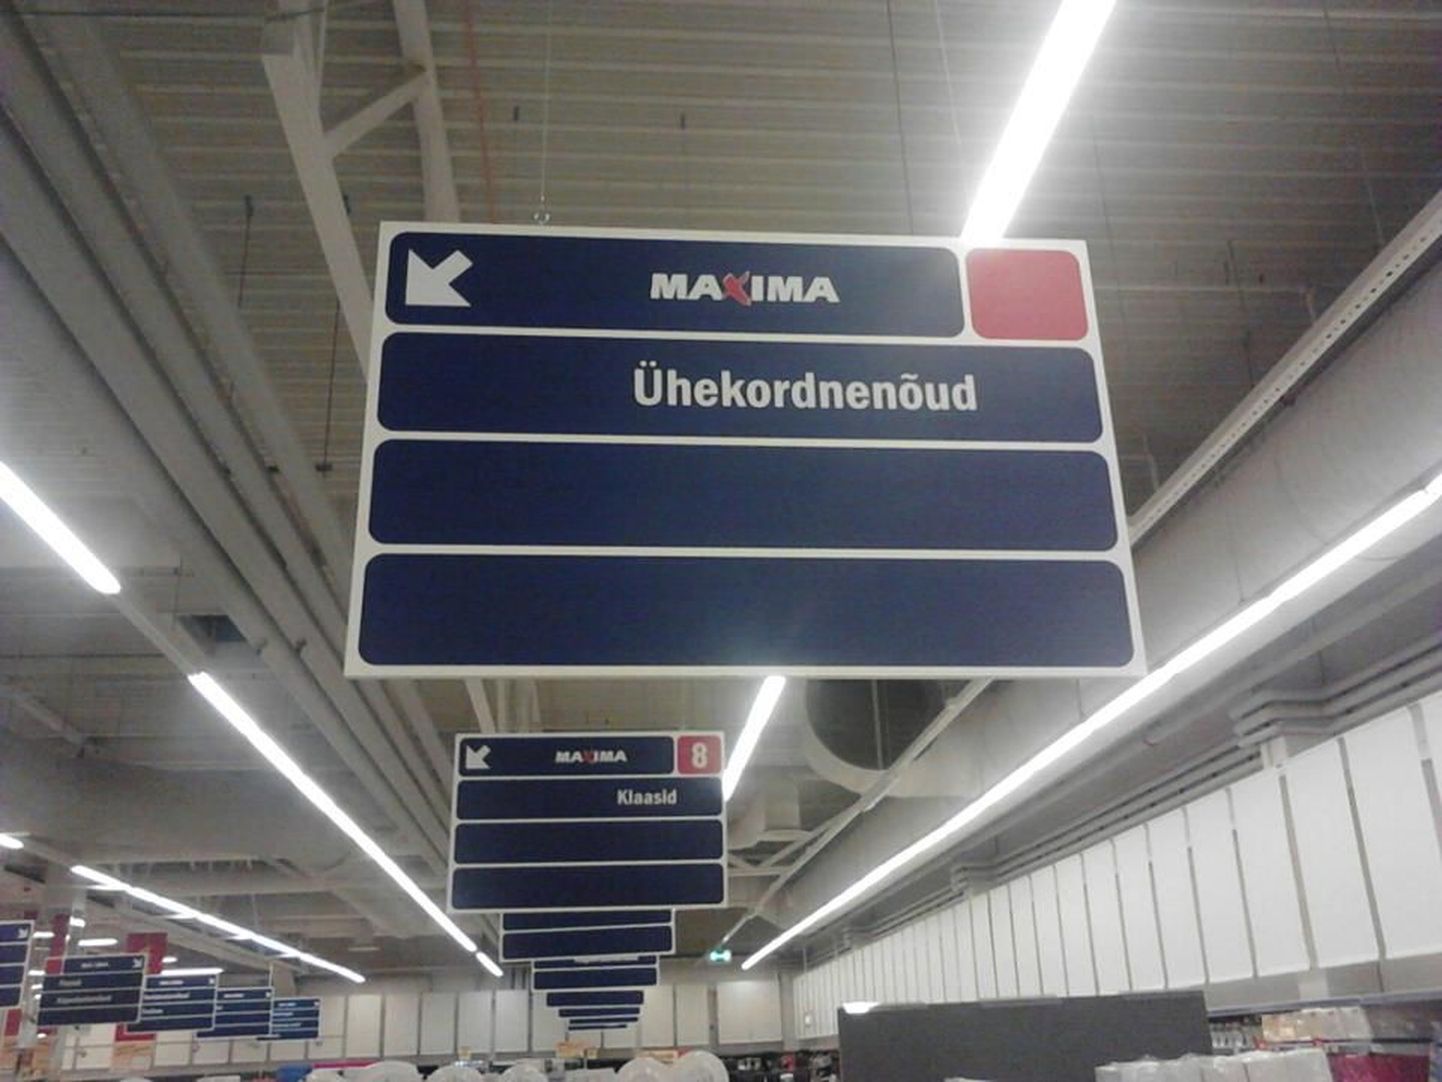 Pärnus Maxima hüpermarketis 10. aprillil rippunud silt kirjaga "Ühekordnenõud".